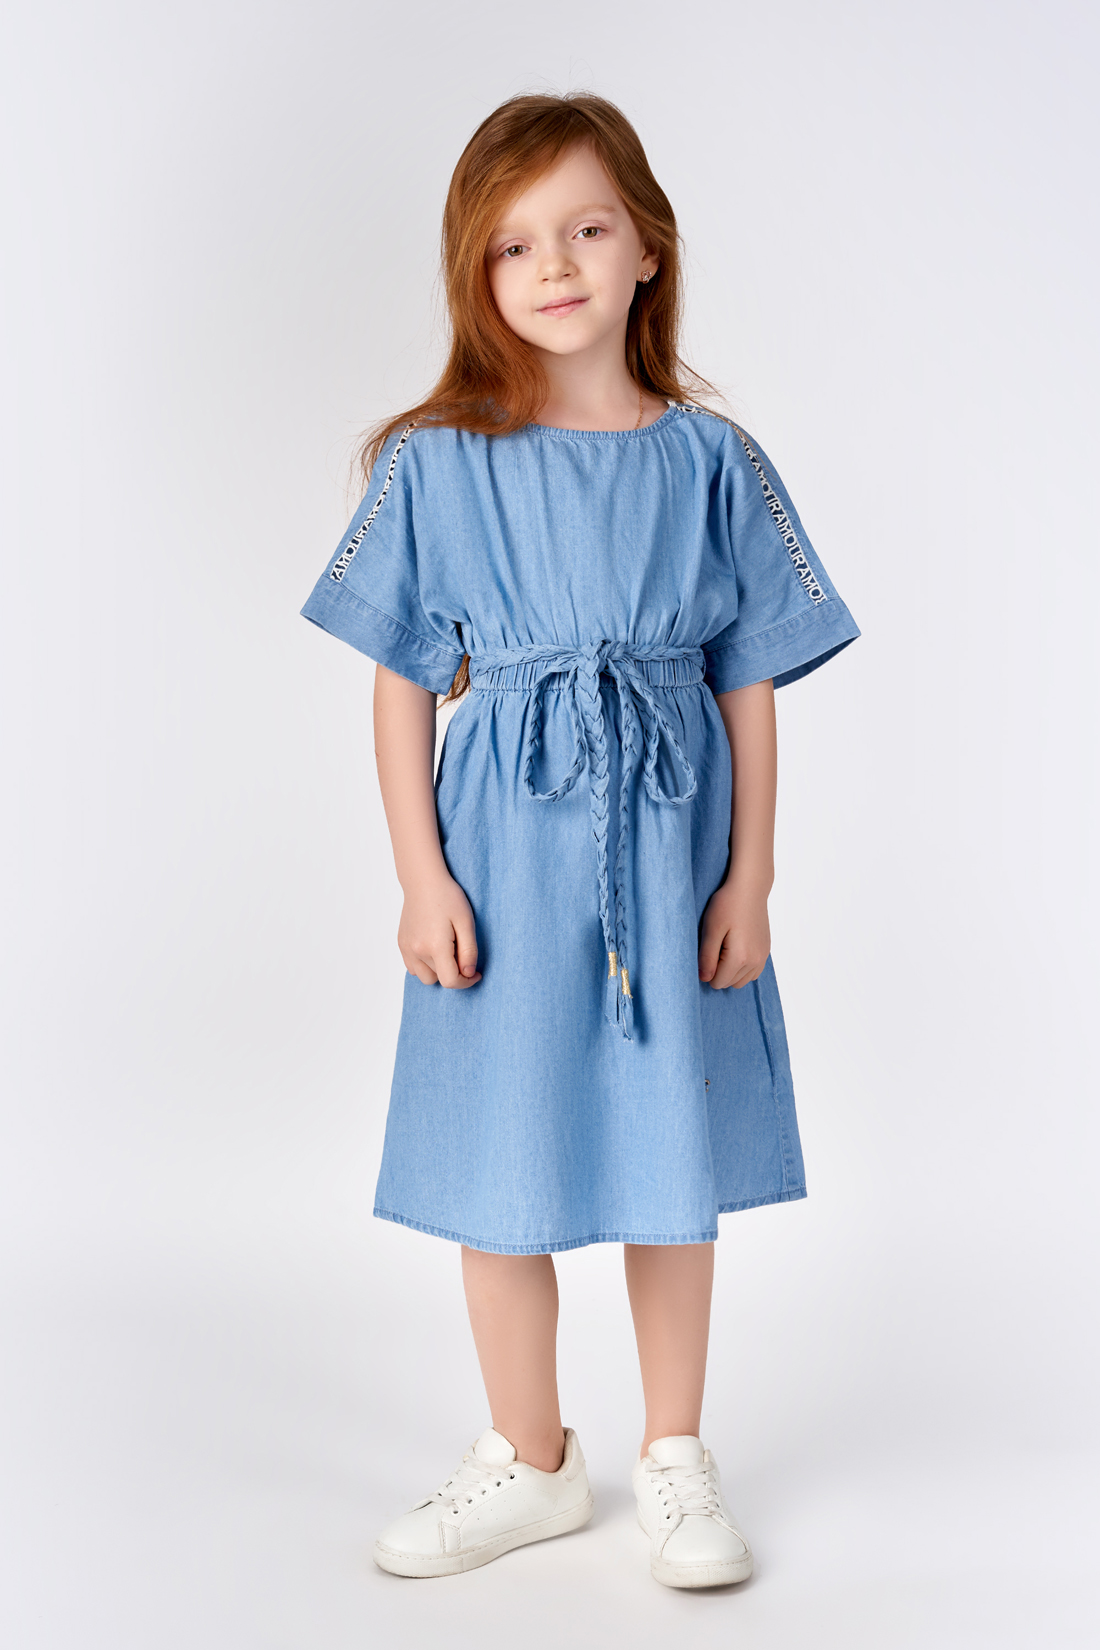 Платье для девочки (арт. baon BK450064), размер 116, цвет blue denim#голубой